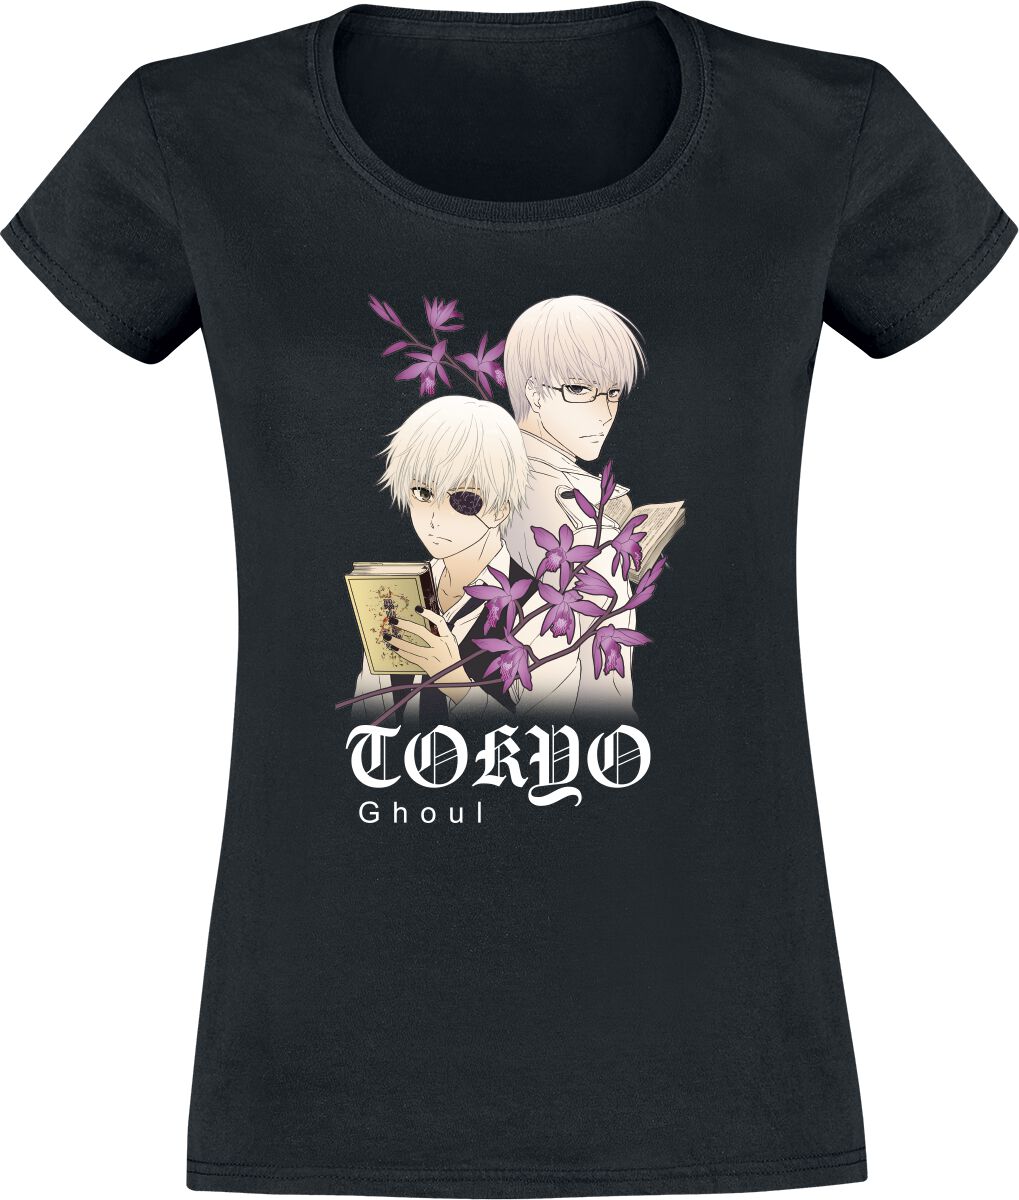 T-Shirt Manches courtes de Tokyo Ghoul - Floral - S à XXL - pour Femme - noir